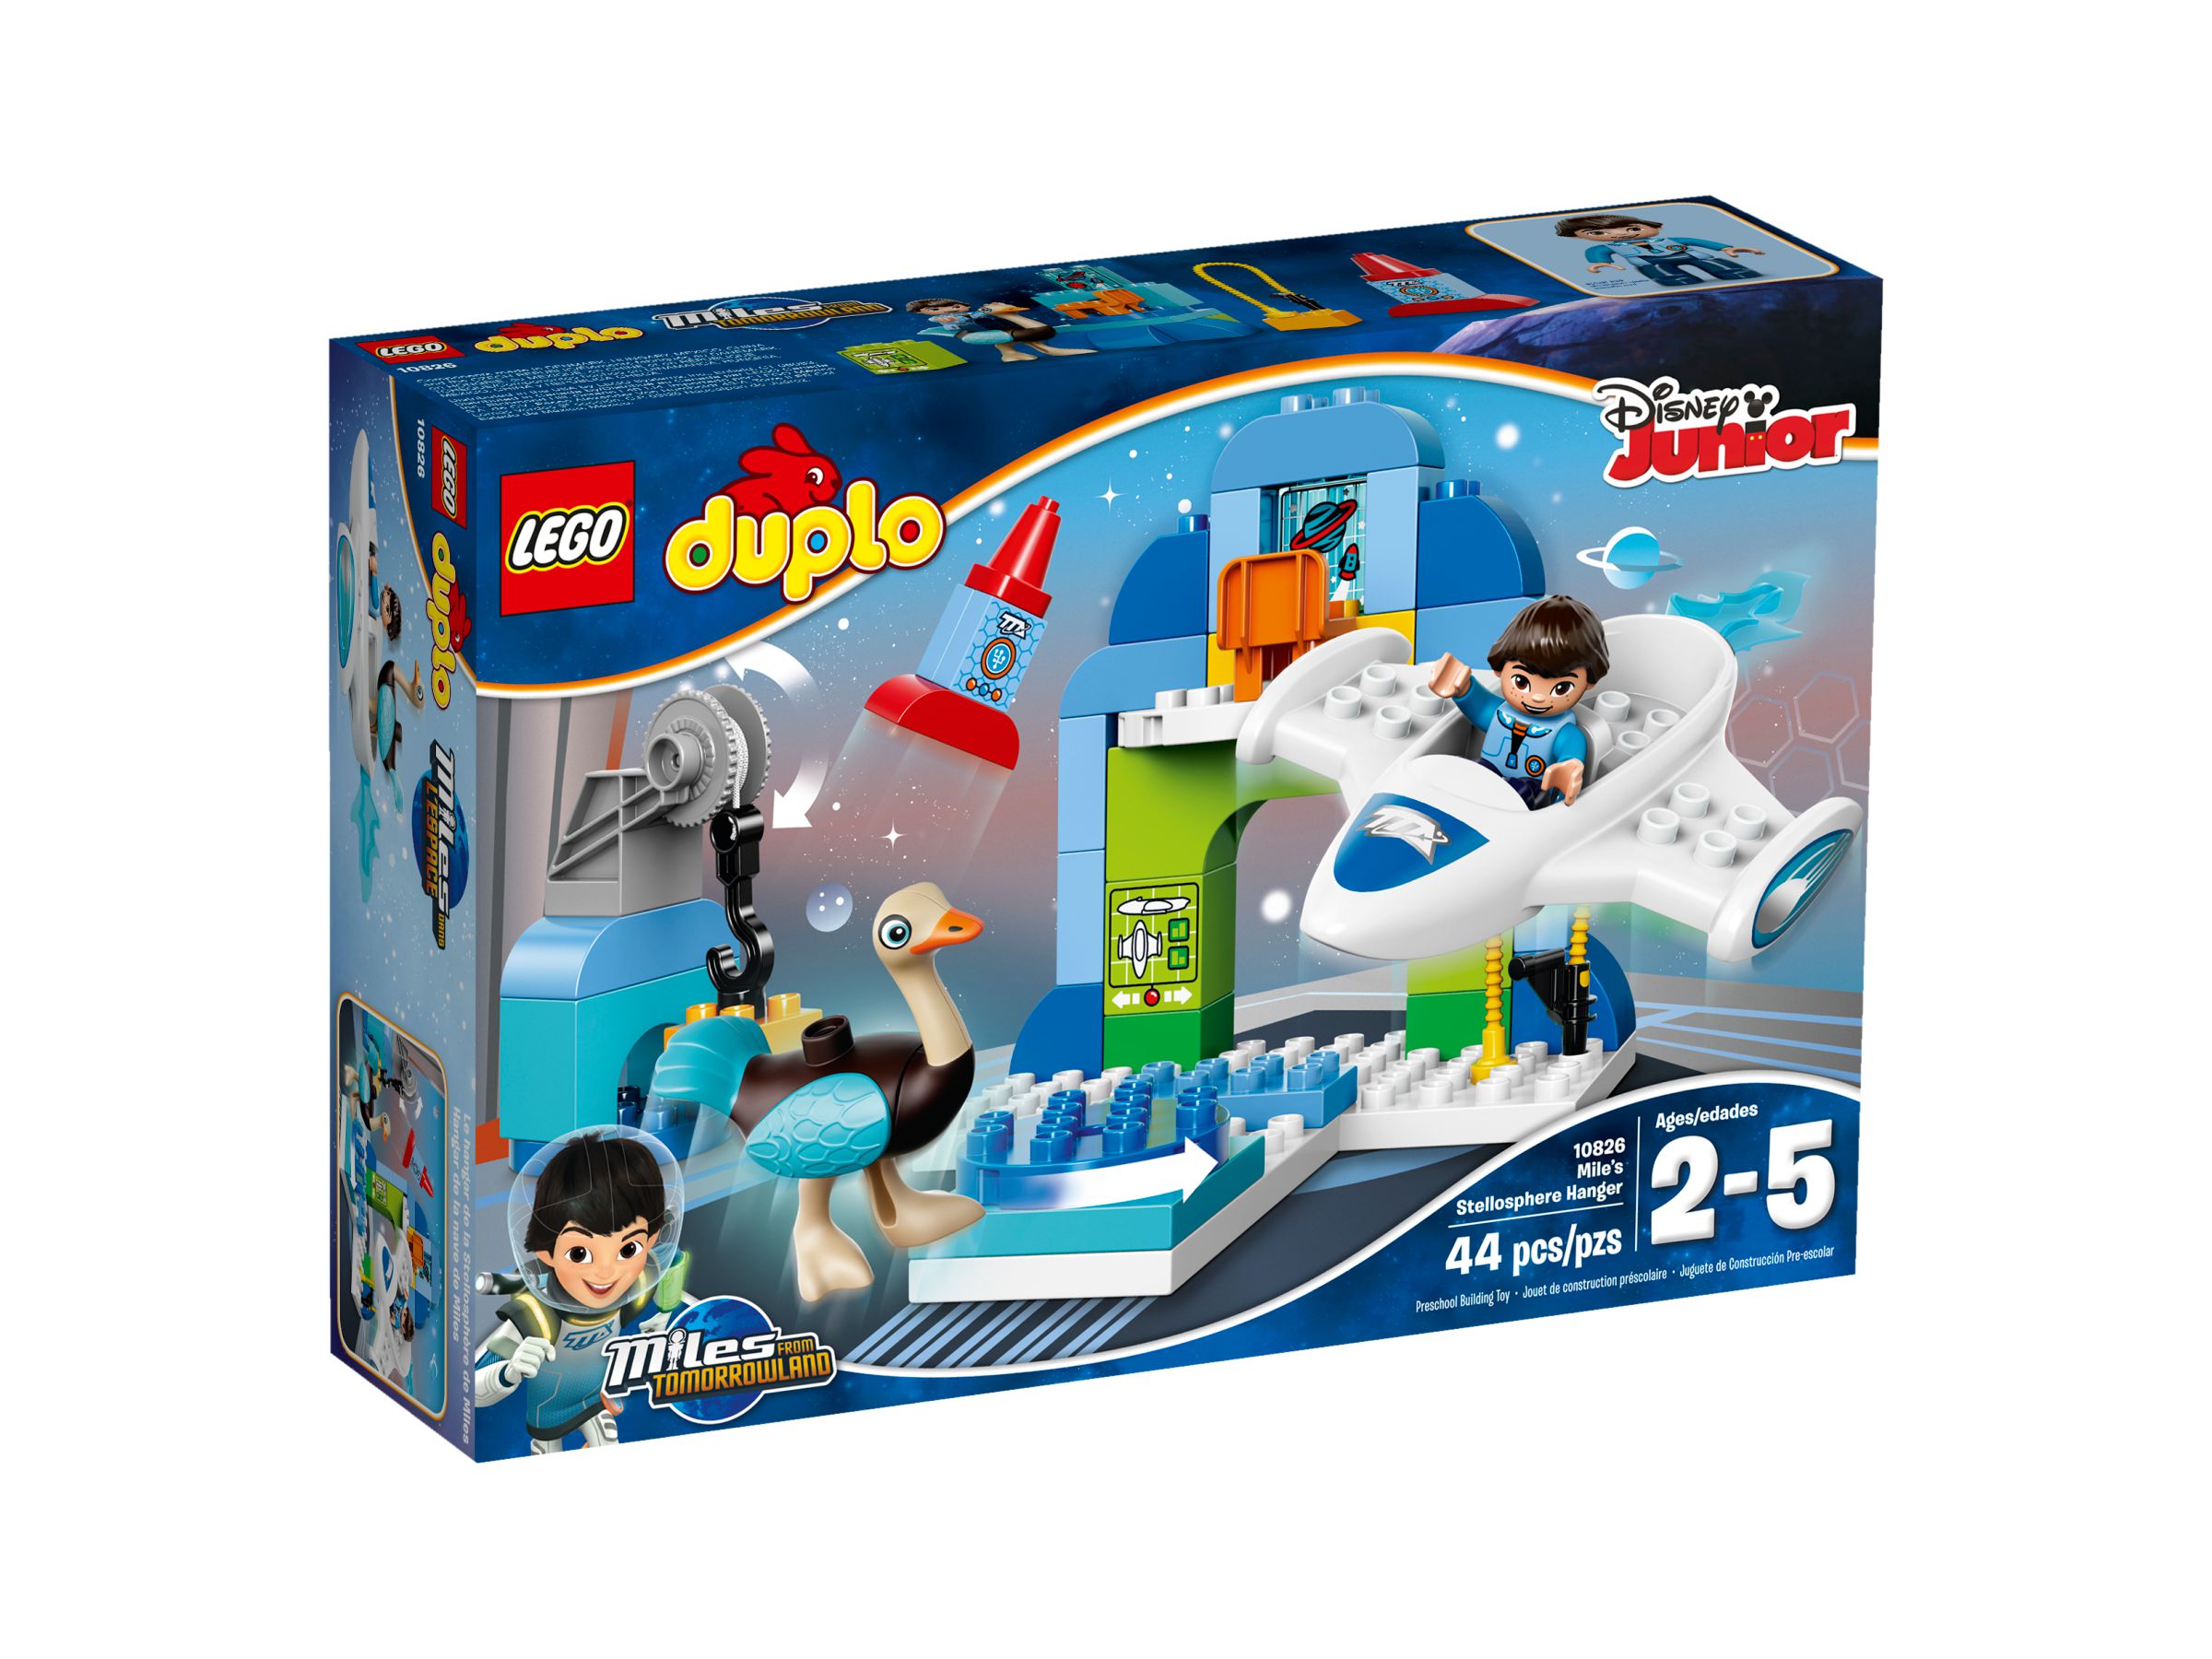 LEGO Duplo 10826 Miles Stellosphere-Raumschiff LEGO_10826_alt1.jpg